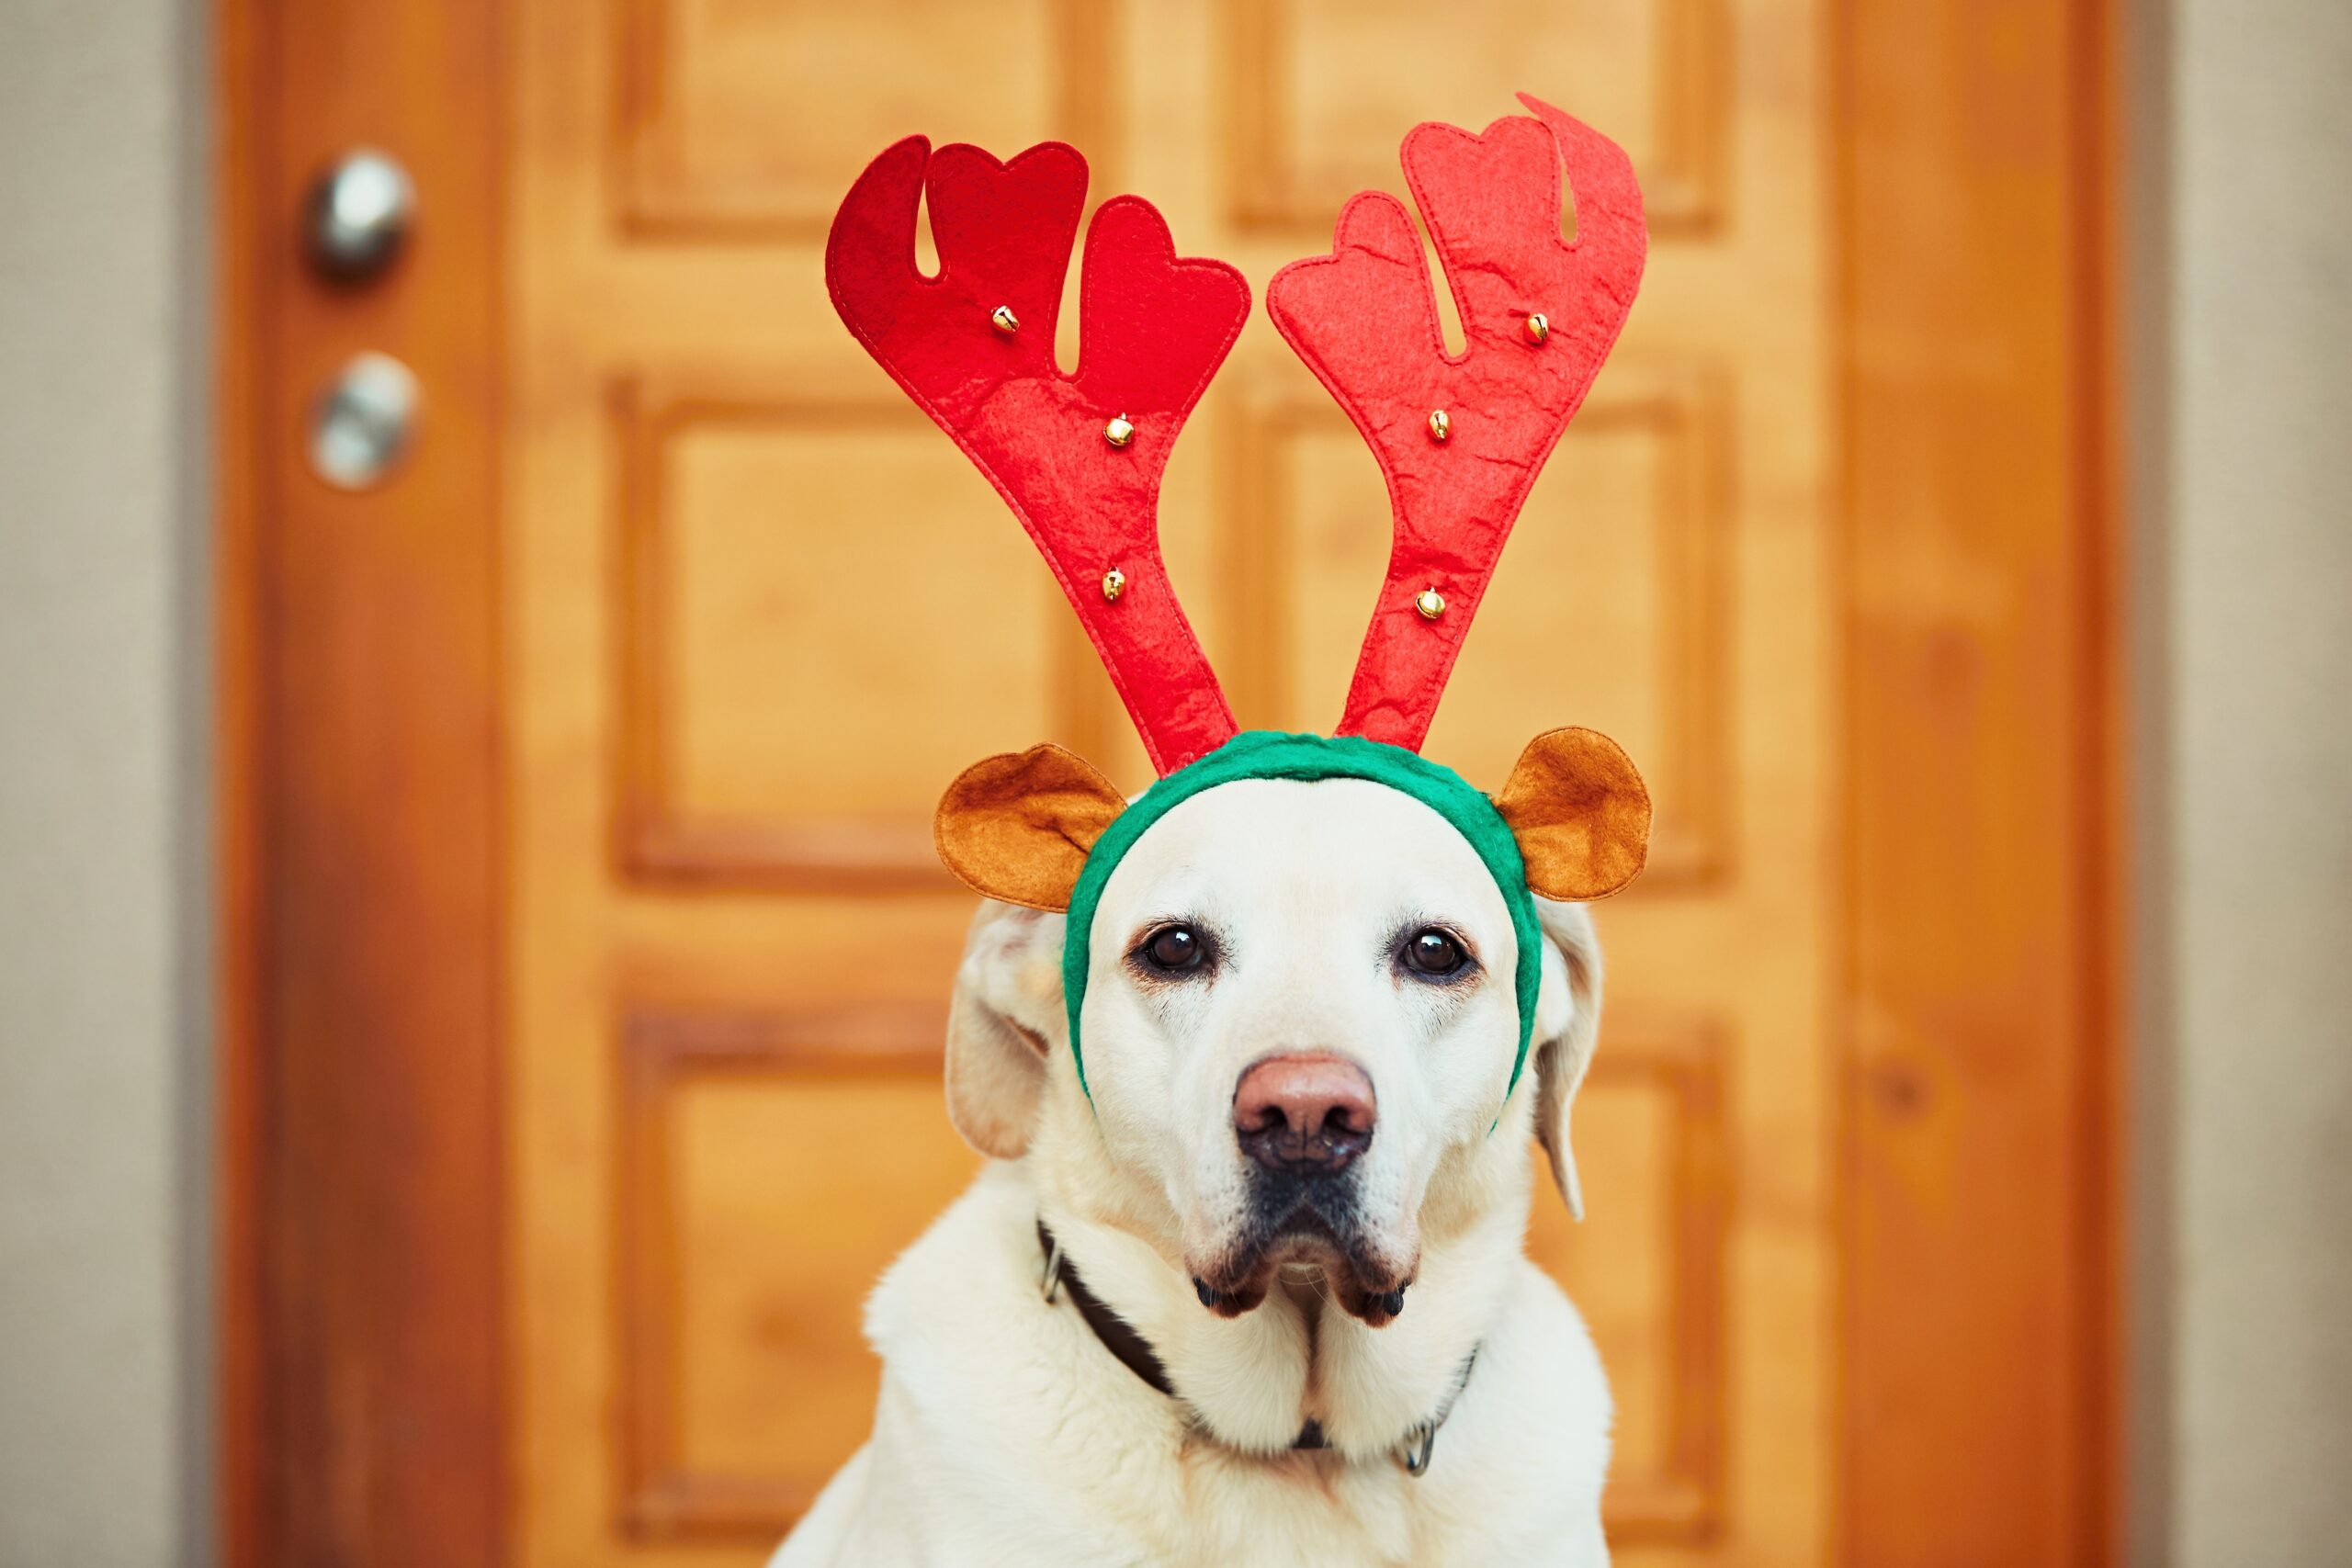 Especial Fofura de Natal: confira os pets mais fotos em clima natalino